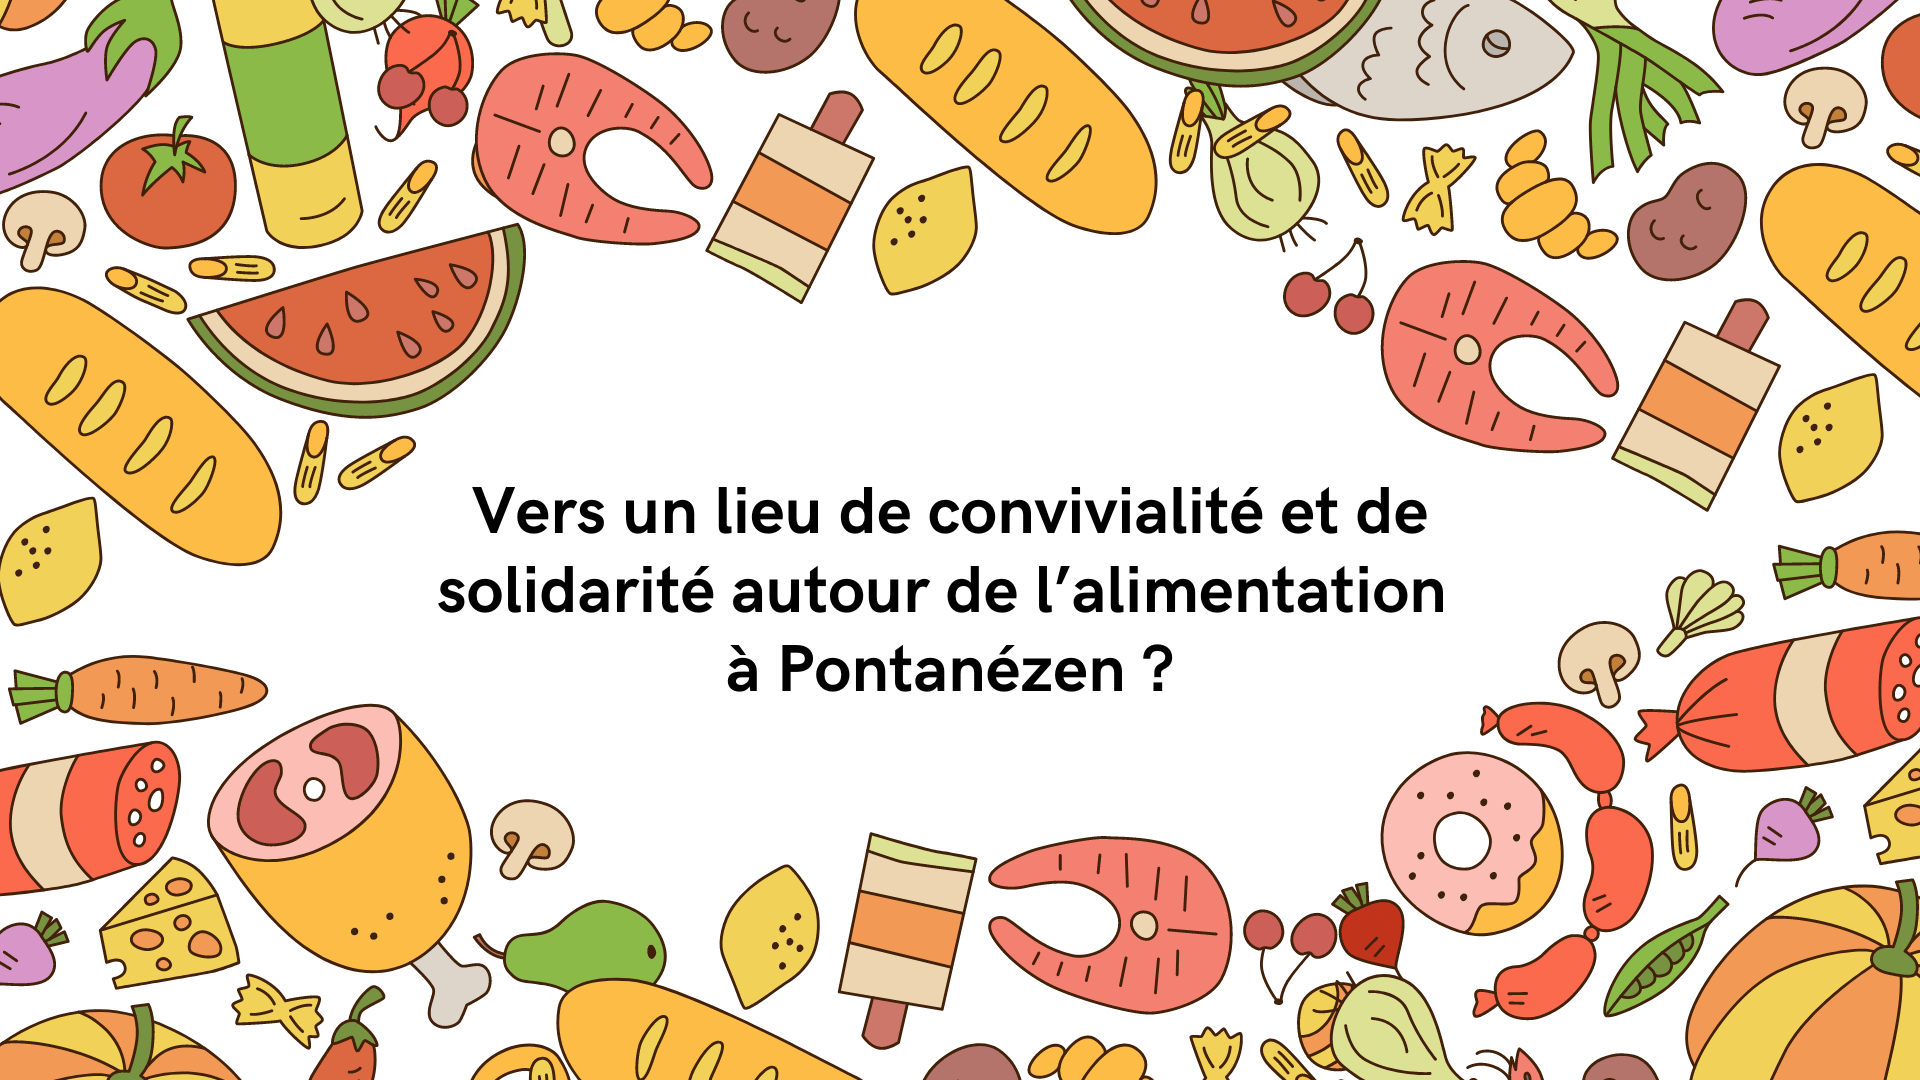 You are currently viewing Enquête : vers un lieu de convivialité et de solidarité autour de l’alimentation à Pontanézen ?